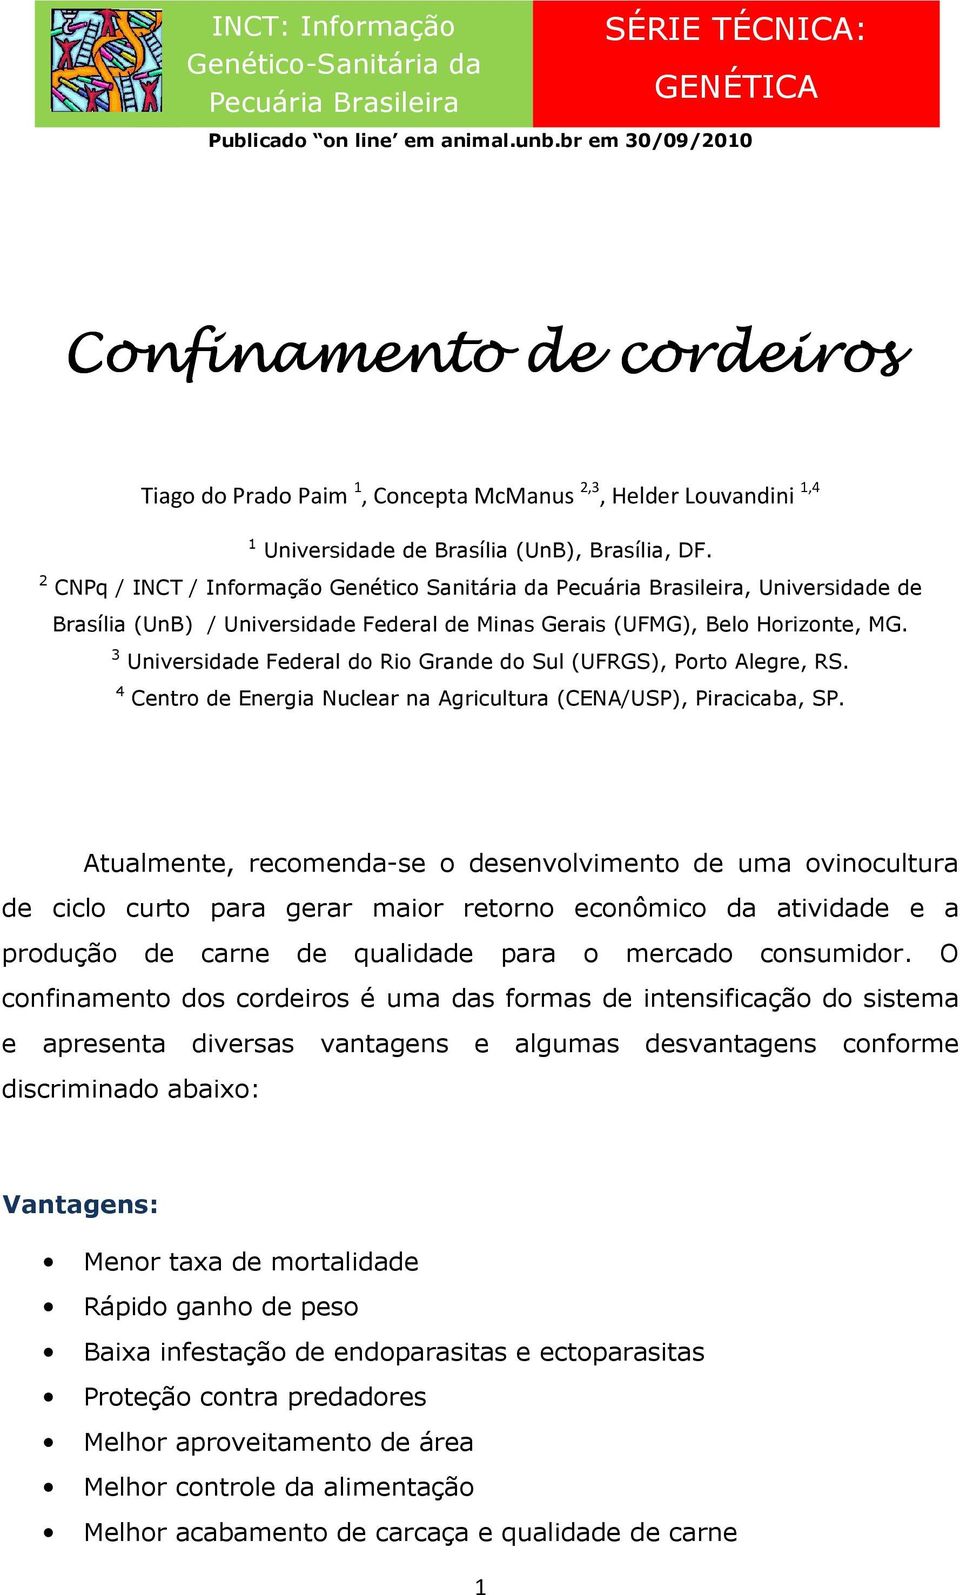 2 CNPq / INCT / Informação Genético Sanitária da Pecuária Brasileira, Universidade de Brasília (UnB) / Universidade Federal de Minas Gerais (UFMG), Belo Horizonte, MG.